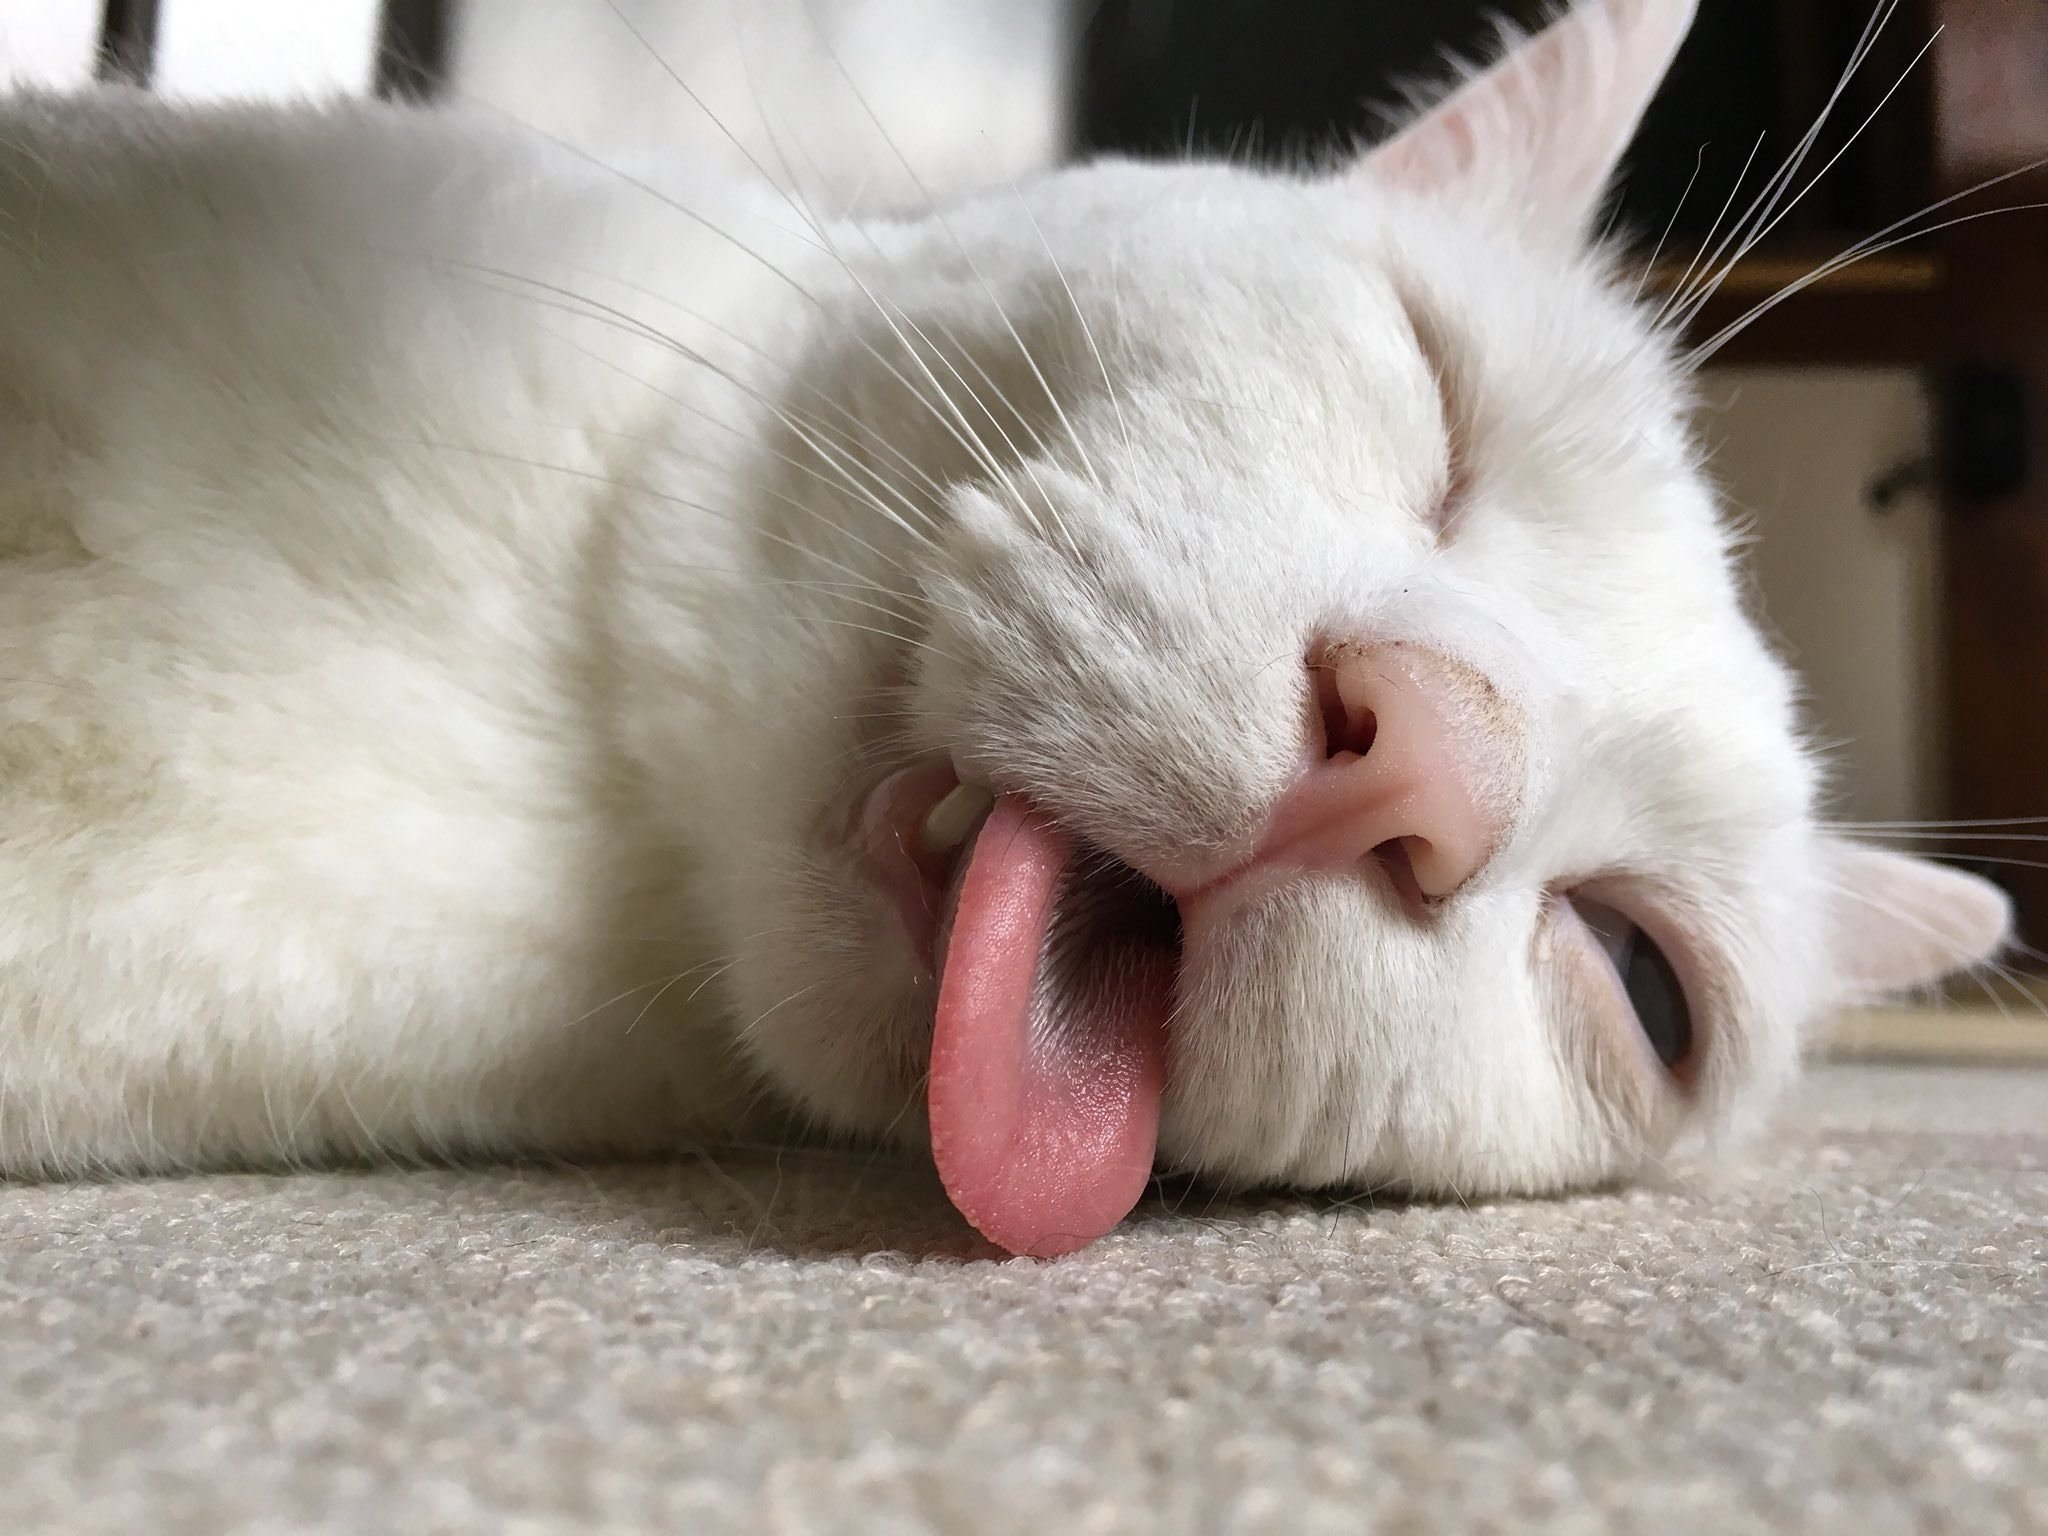 Открыт кис. Кошка с высунутым языком. Спящий кот. Белая кошка с высунутым языком. Спящий кот с высунутым языком.